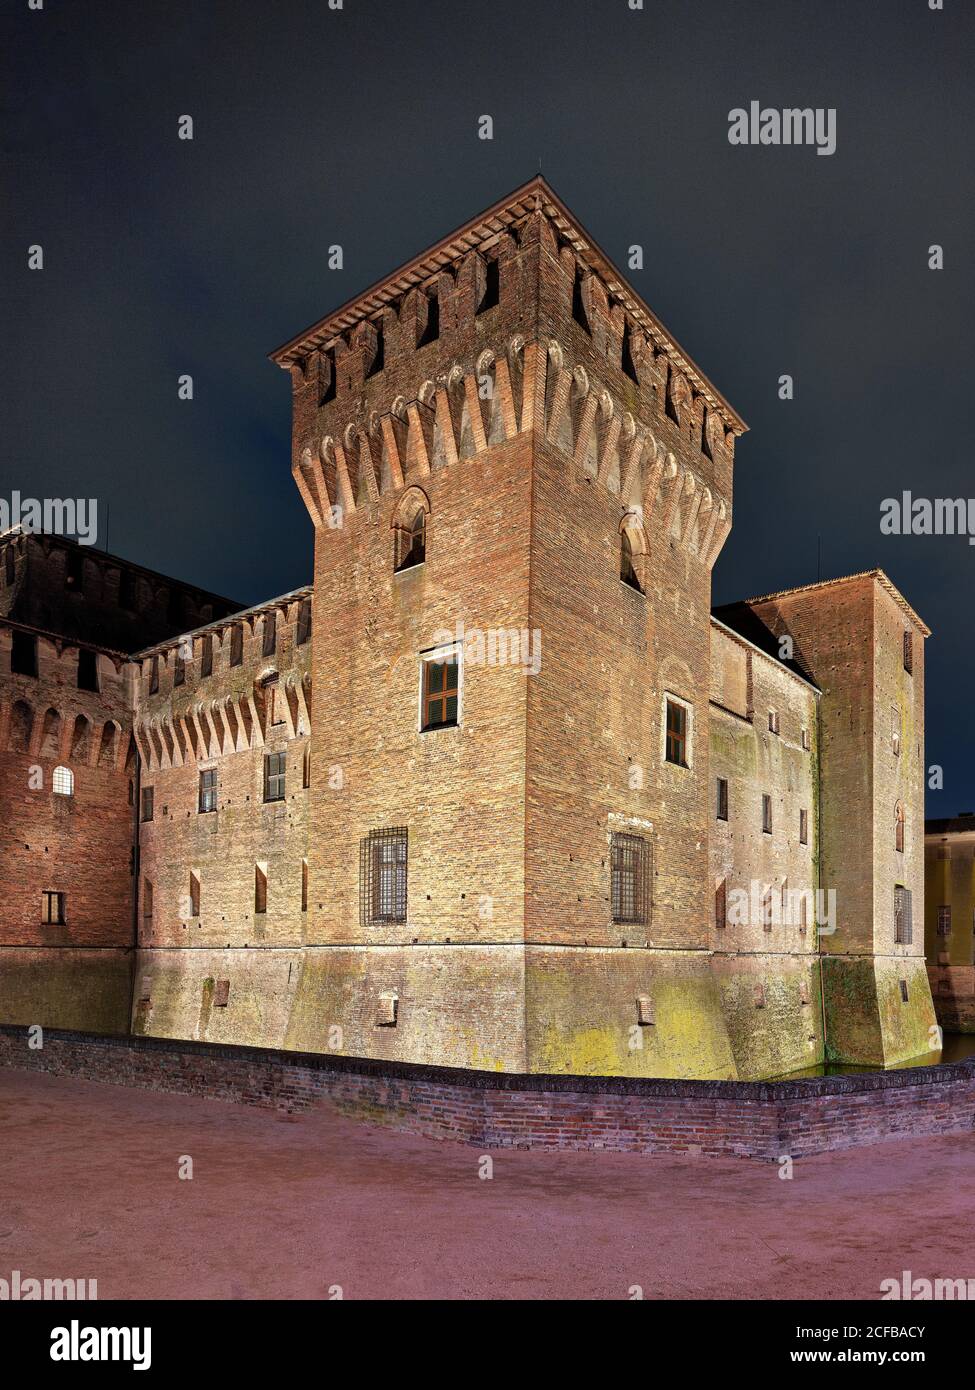 Château de Saint-Georges (Castello di San Giorgio), Mantoue (Mantova), province de Mantoue, Lombardie, Italie, site du patrimoine mondial de l'UNESCO, Renaissance Banque D'Images